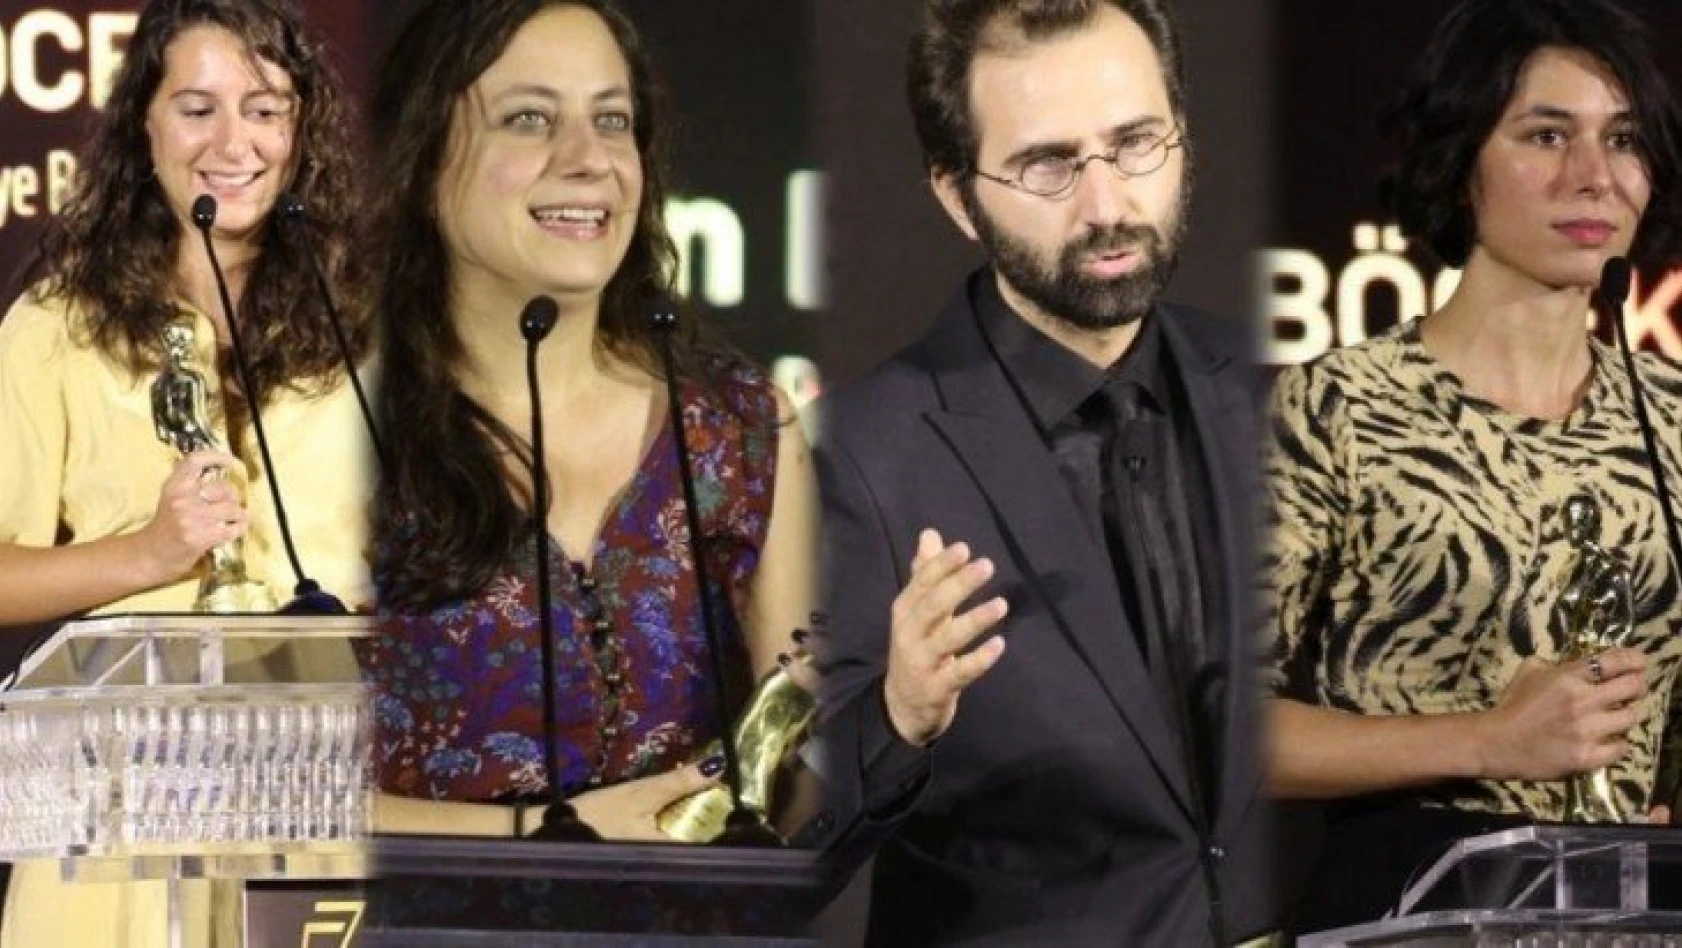 Antalya Altın Portakal Film Festivali'nde ödüller sahiplerini buldu